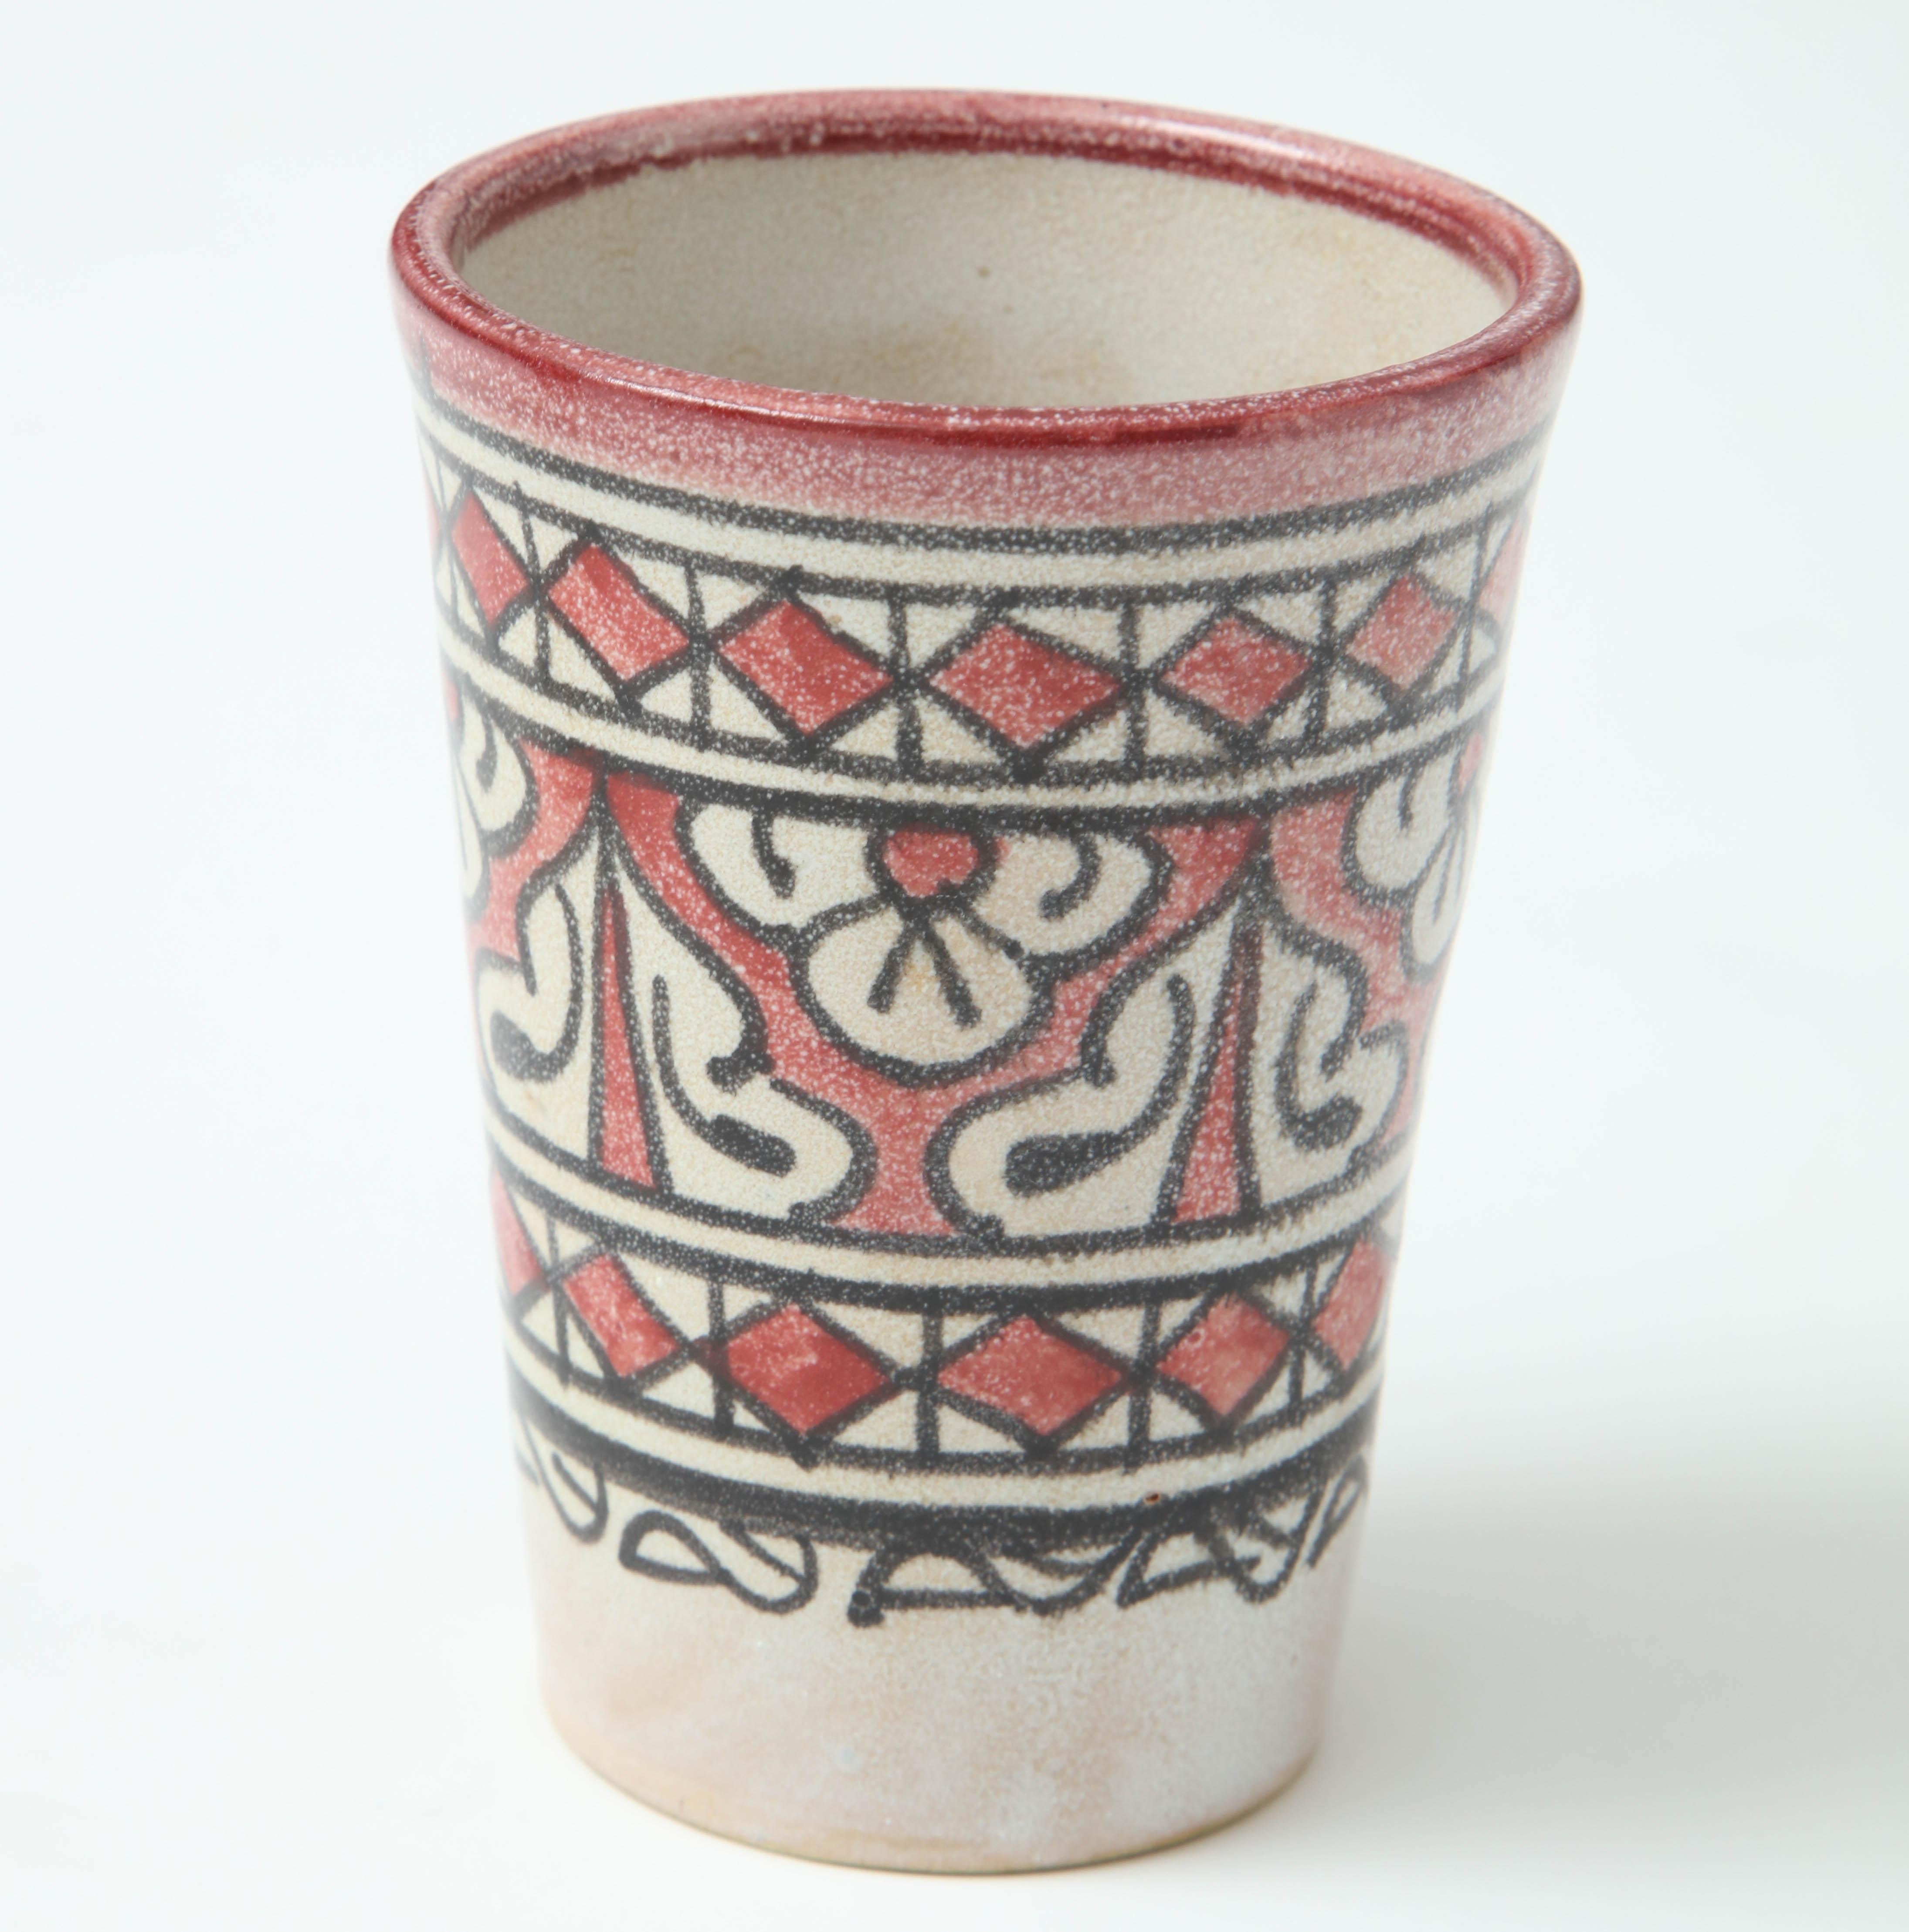 Decorative ceramic vessel from Morocco.